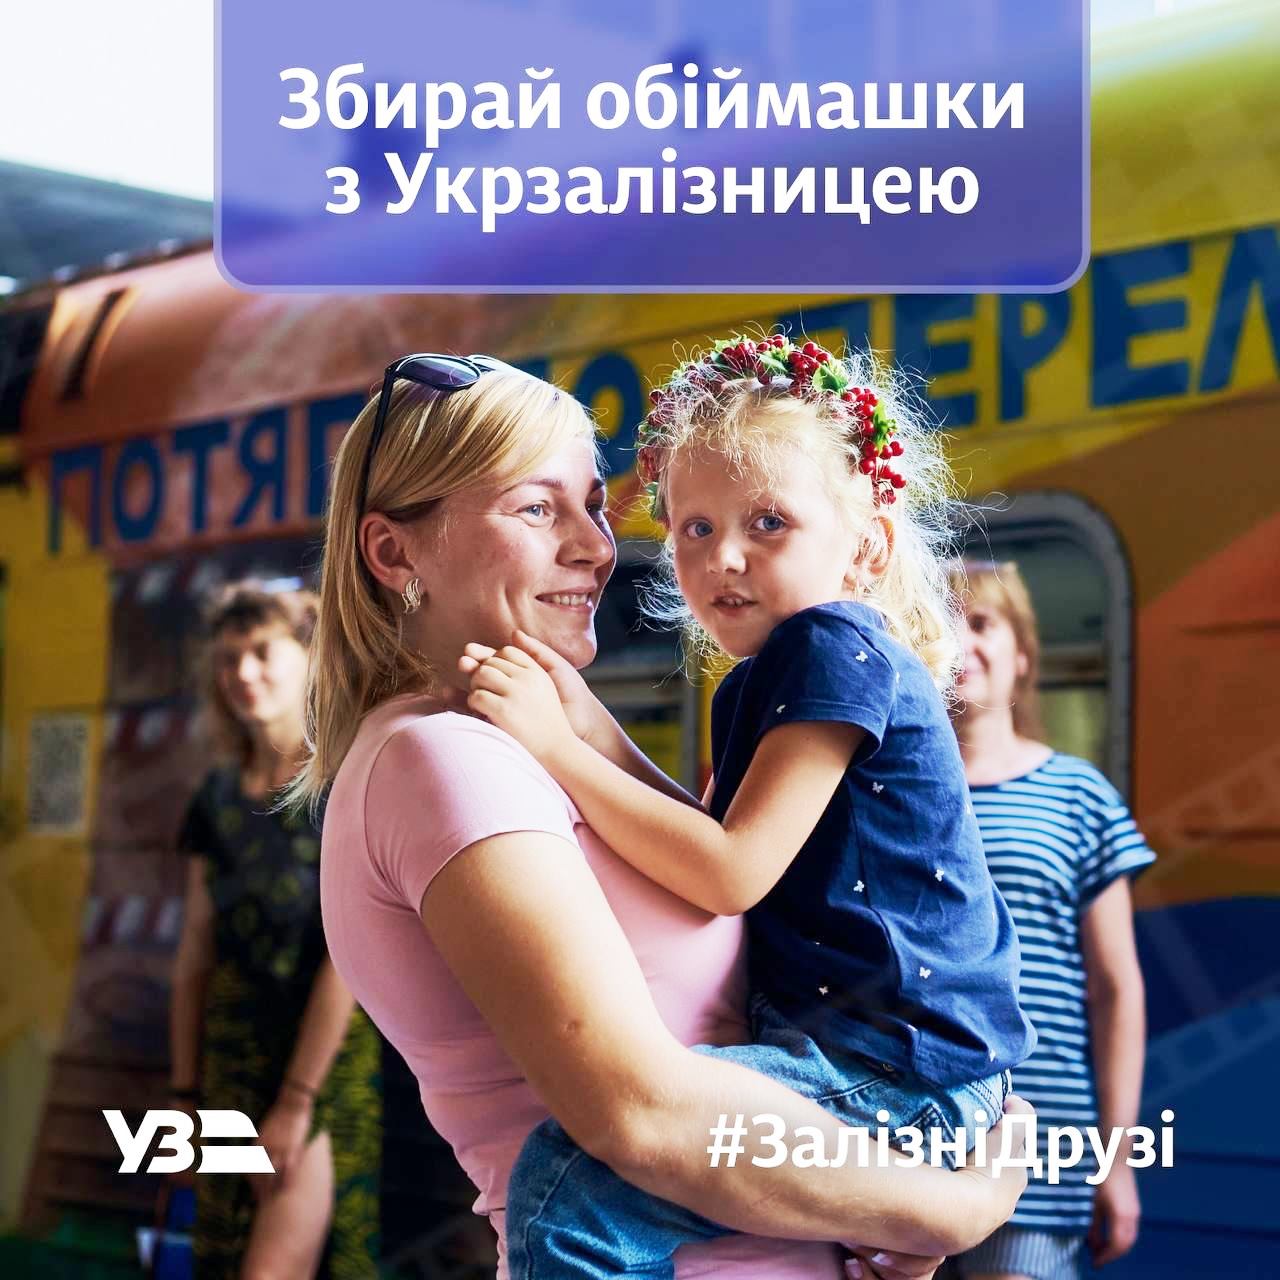 Укрзализныця запустила программу лояльности для пассажиров “Железные друзья“